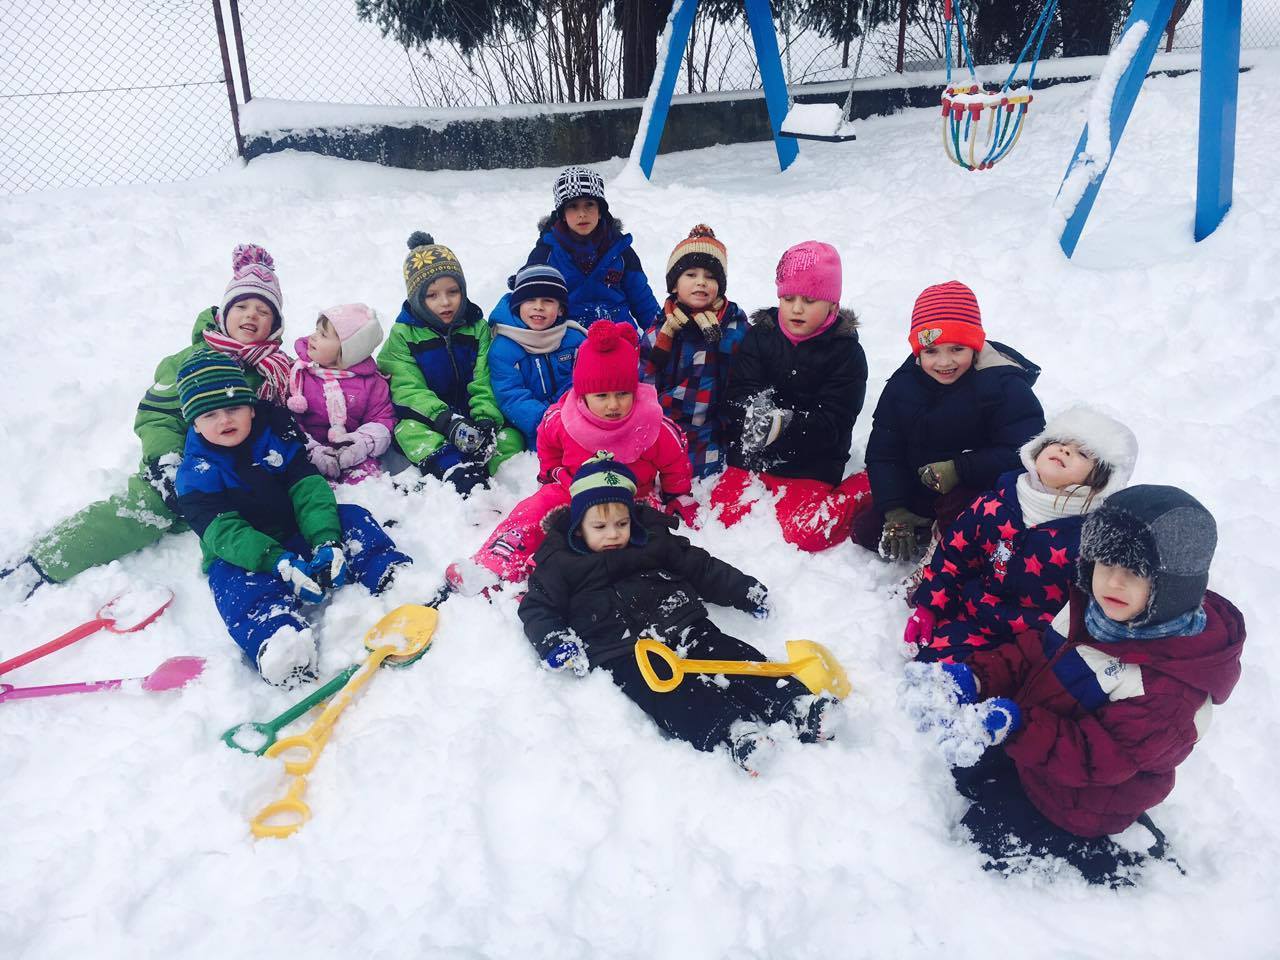 děti se radují ze sněhu2.jpg